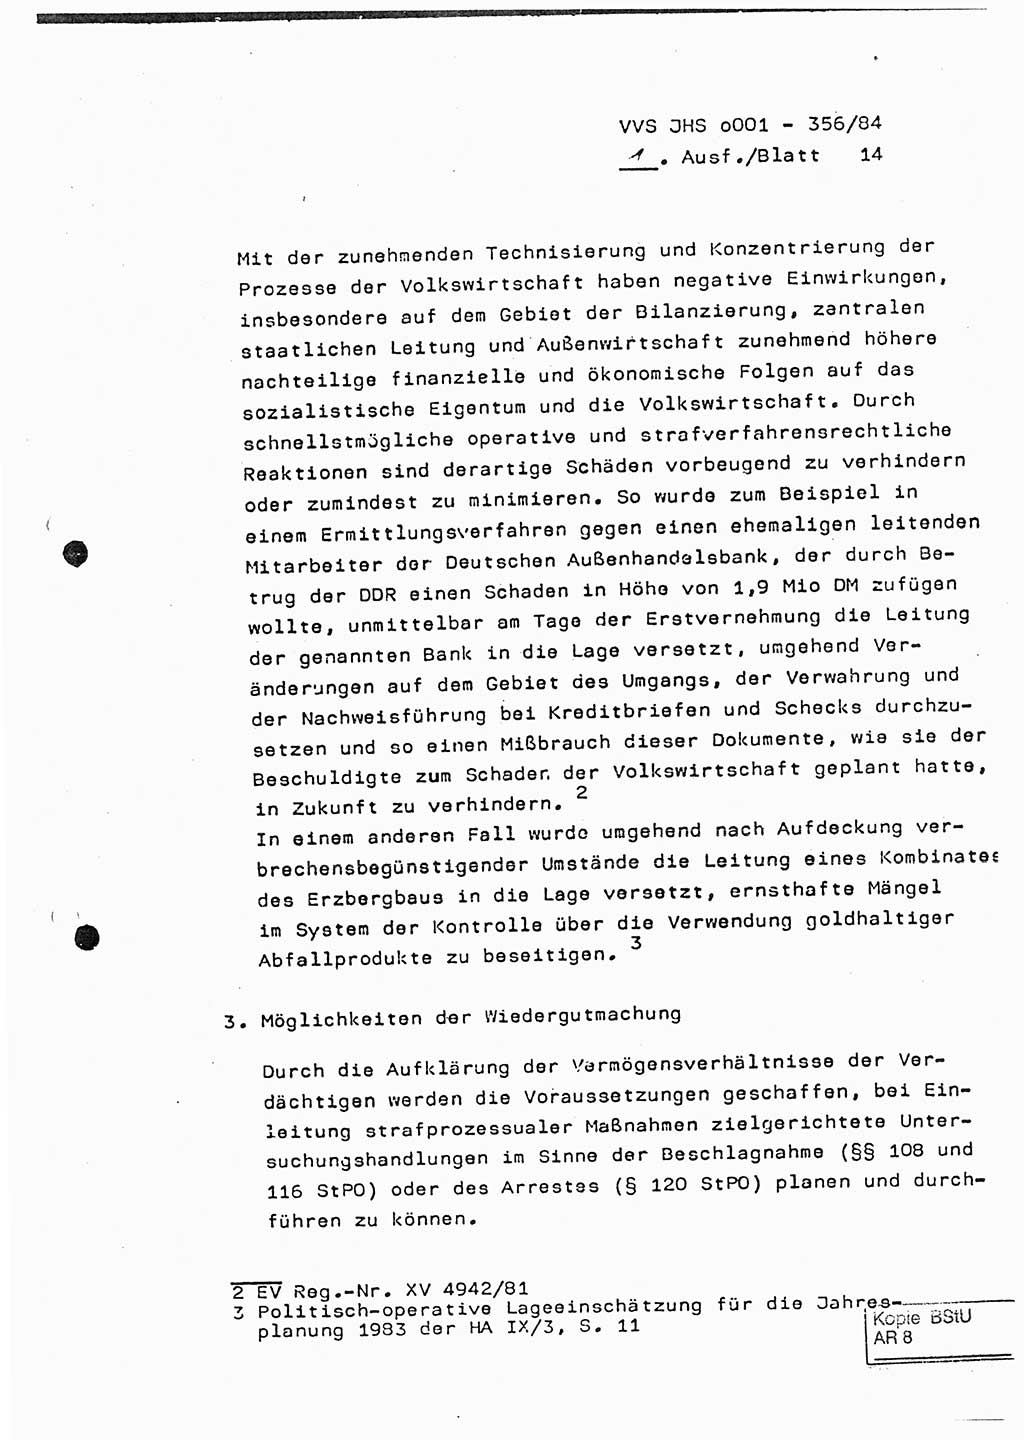 Diplomarbeit, Major Lutz Rahaus (HA Ⅸ/3), Ministerium für Staatssicherheit (MfS) [Deutsche Demokratische Republik (DDR)], Juristische Hochschule (JHS), Vertrauliche Verschlußsache (VVS) o001-356/84, Potsdam 1984, Seite 14 (Dipl.-Arb. MfS DDR JHS VVS o001-356/84 1984, S. 14)